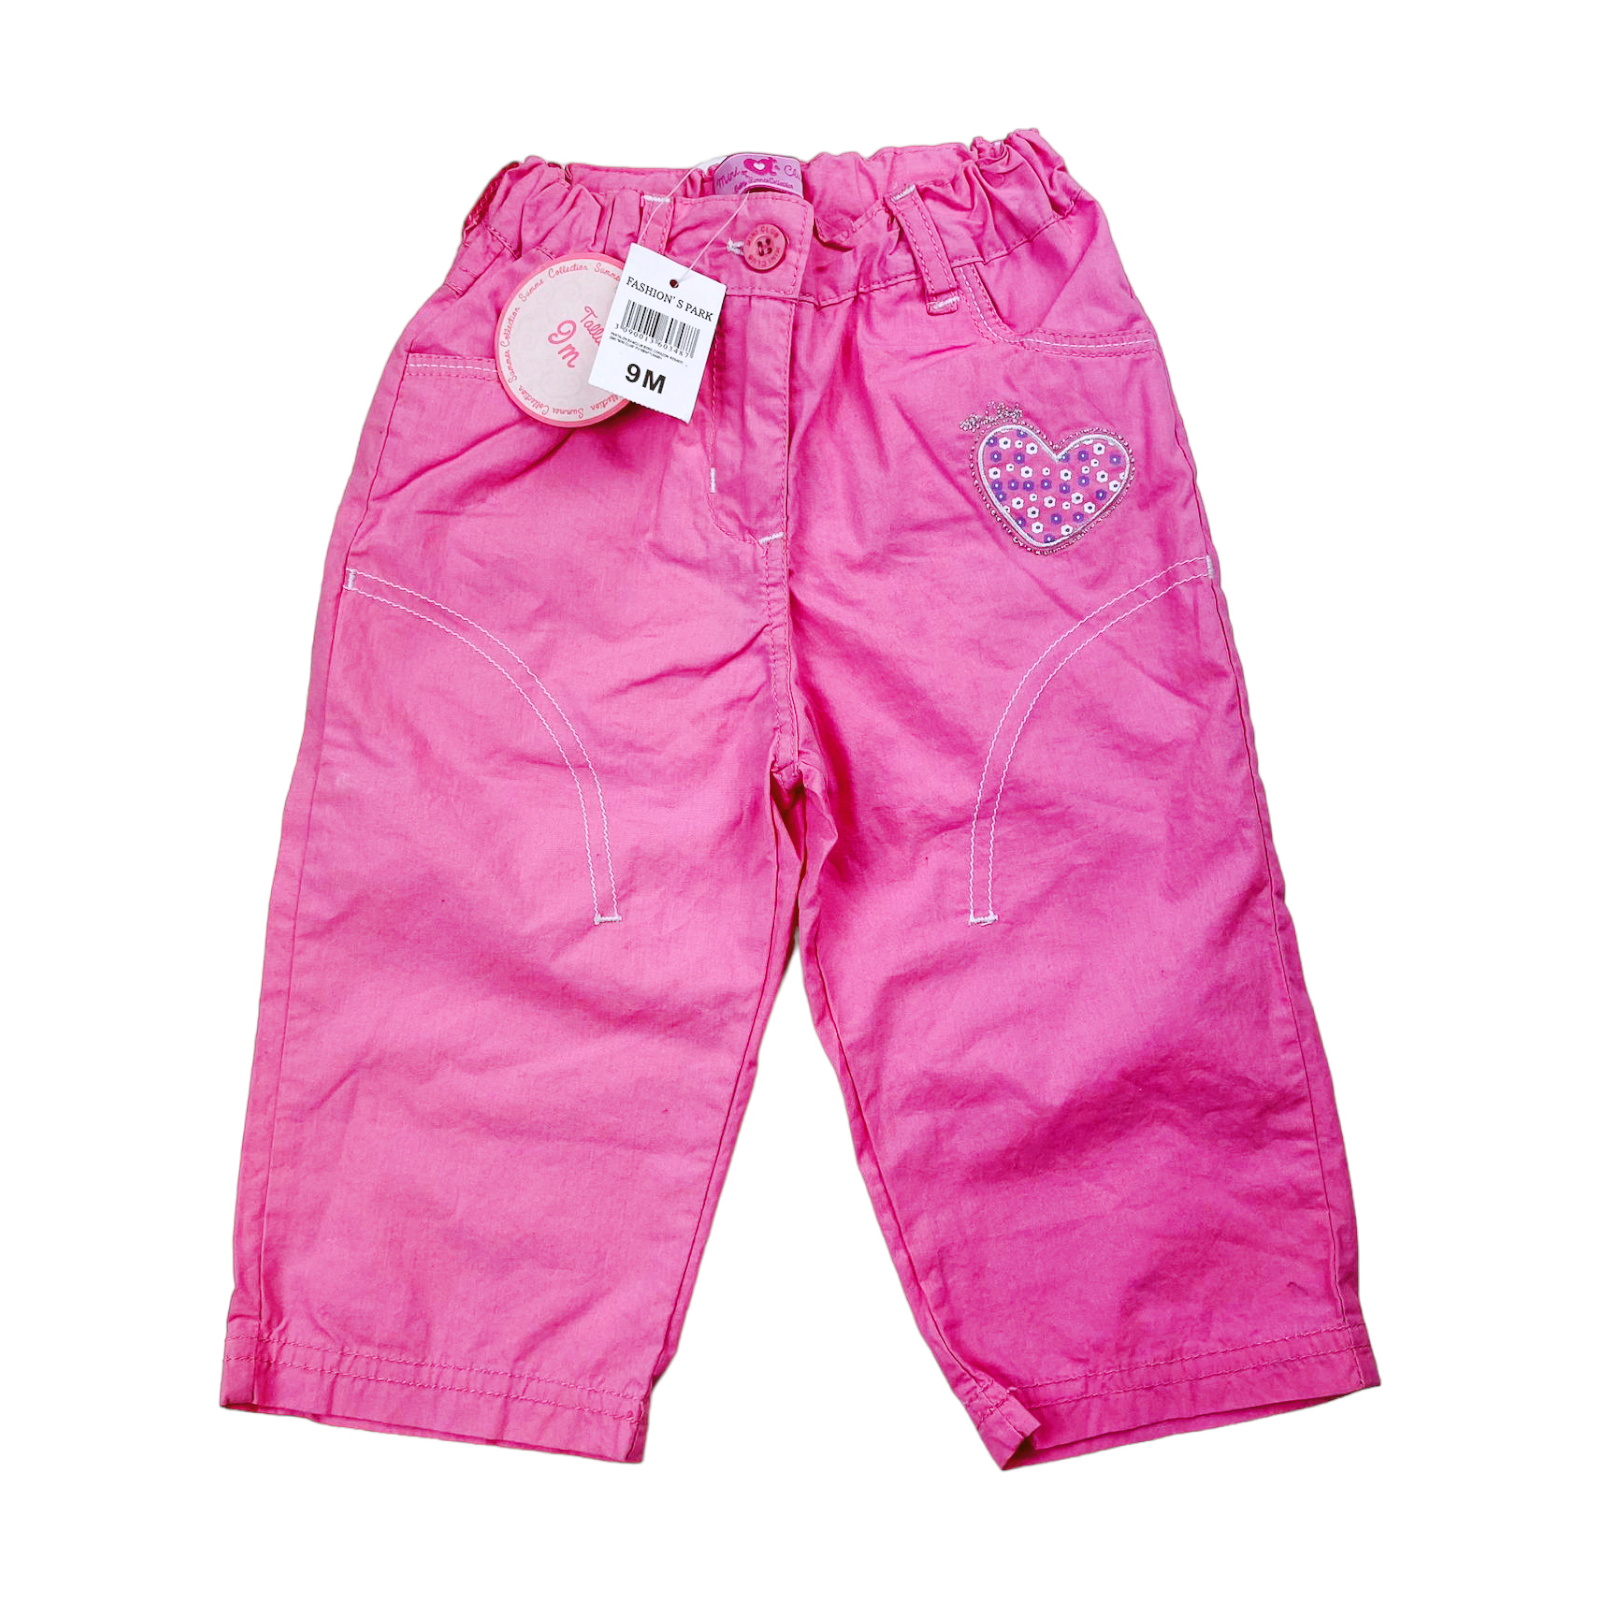 Pantalon rosado nuevo con etiqueta